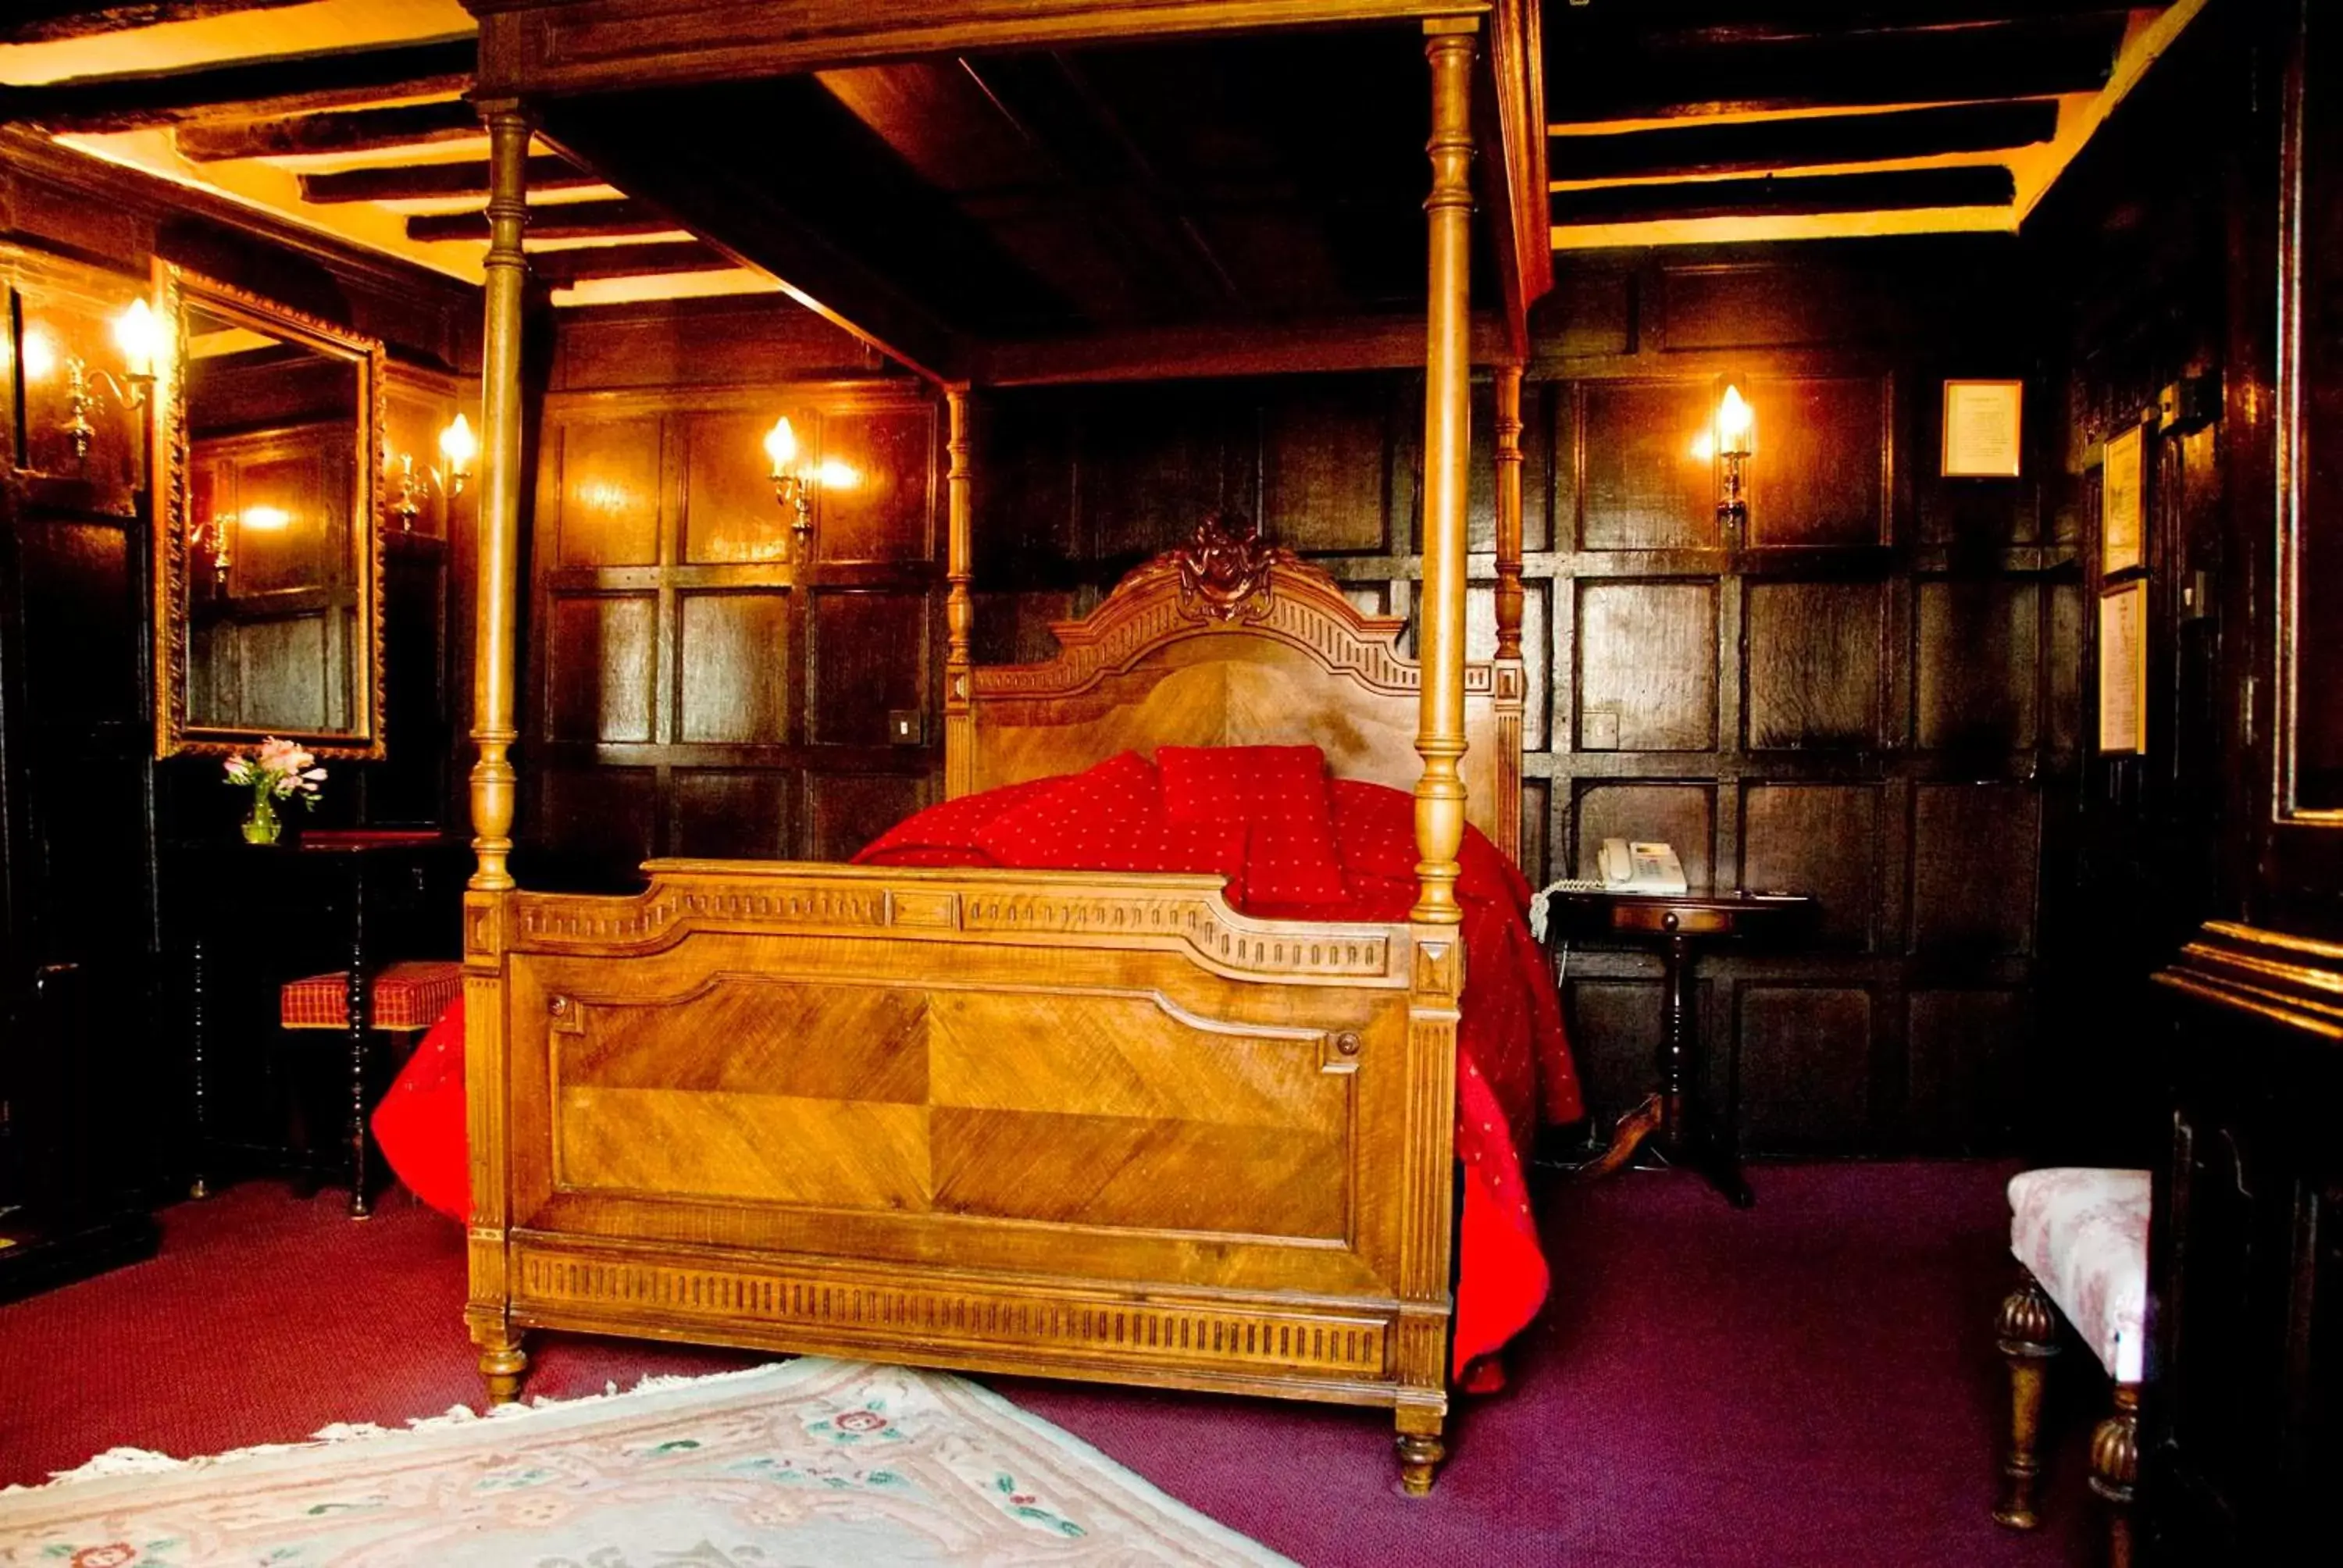 Bed in Mermaid Inn